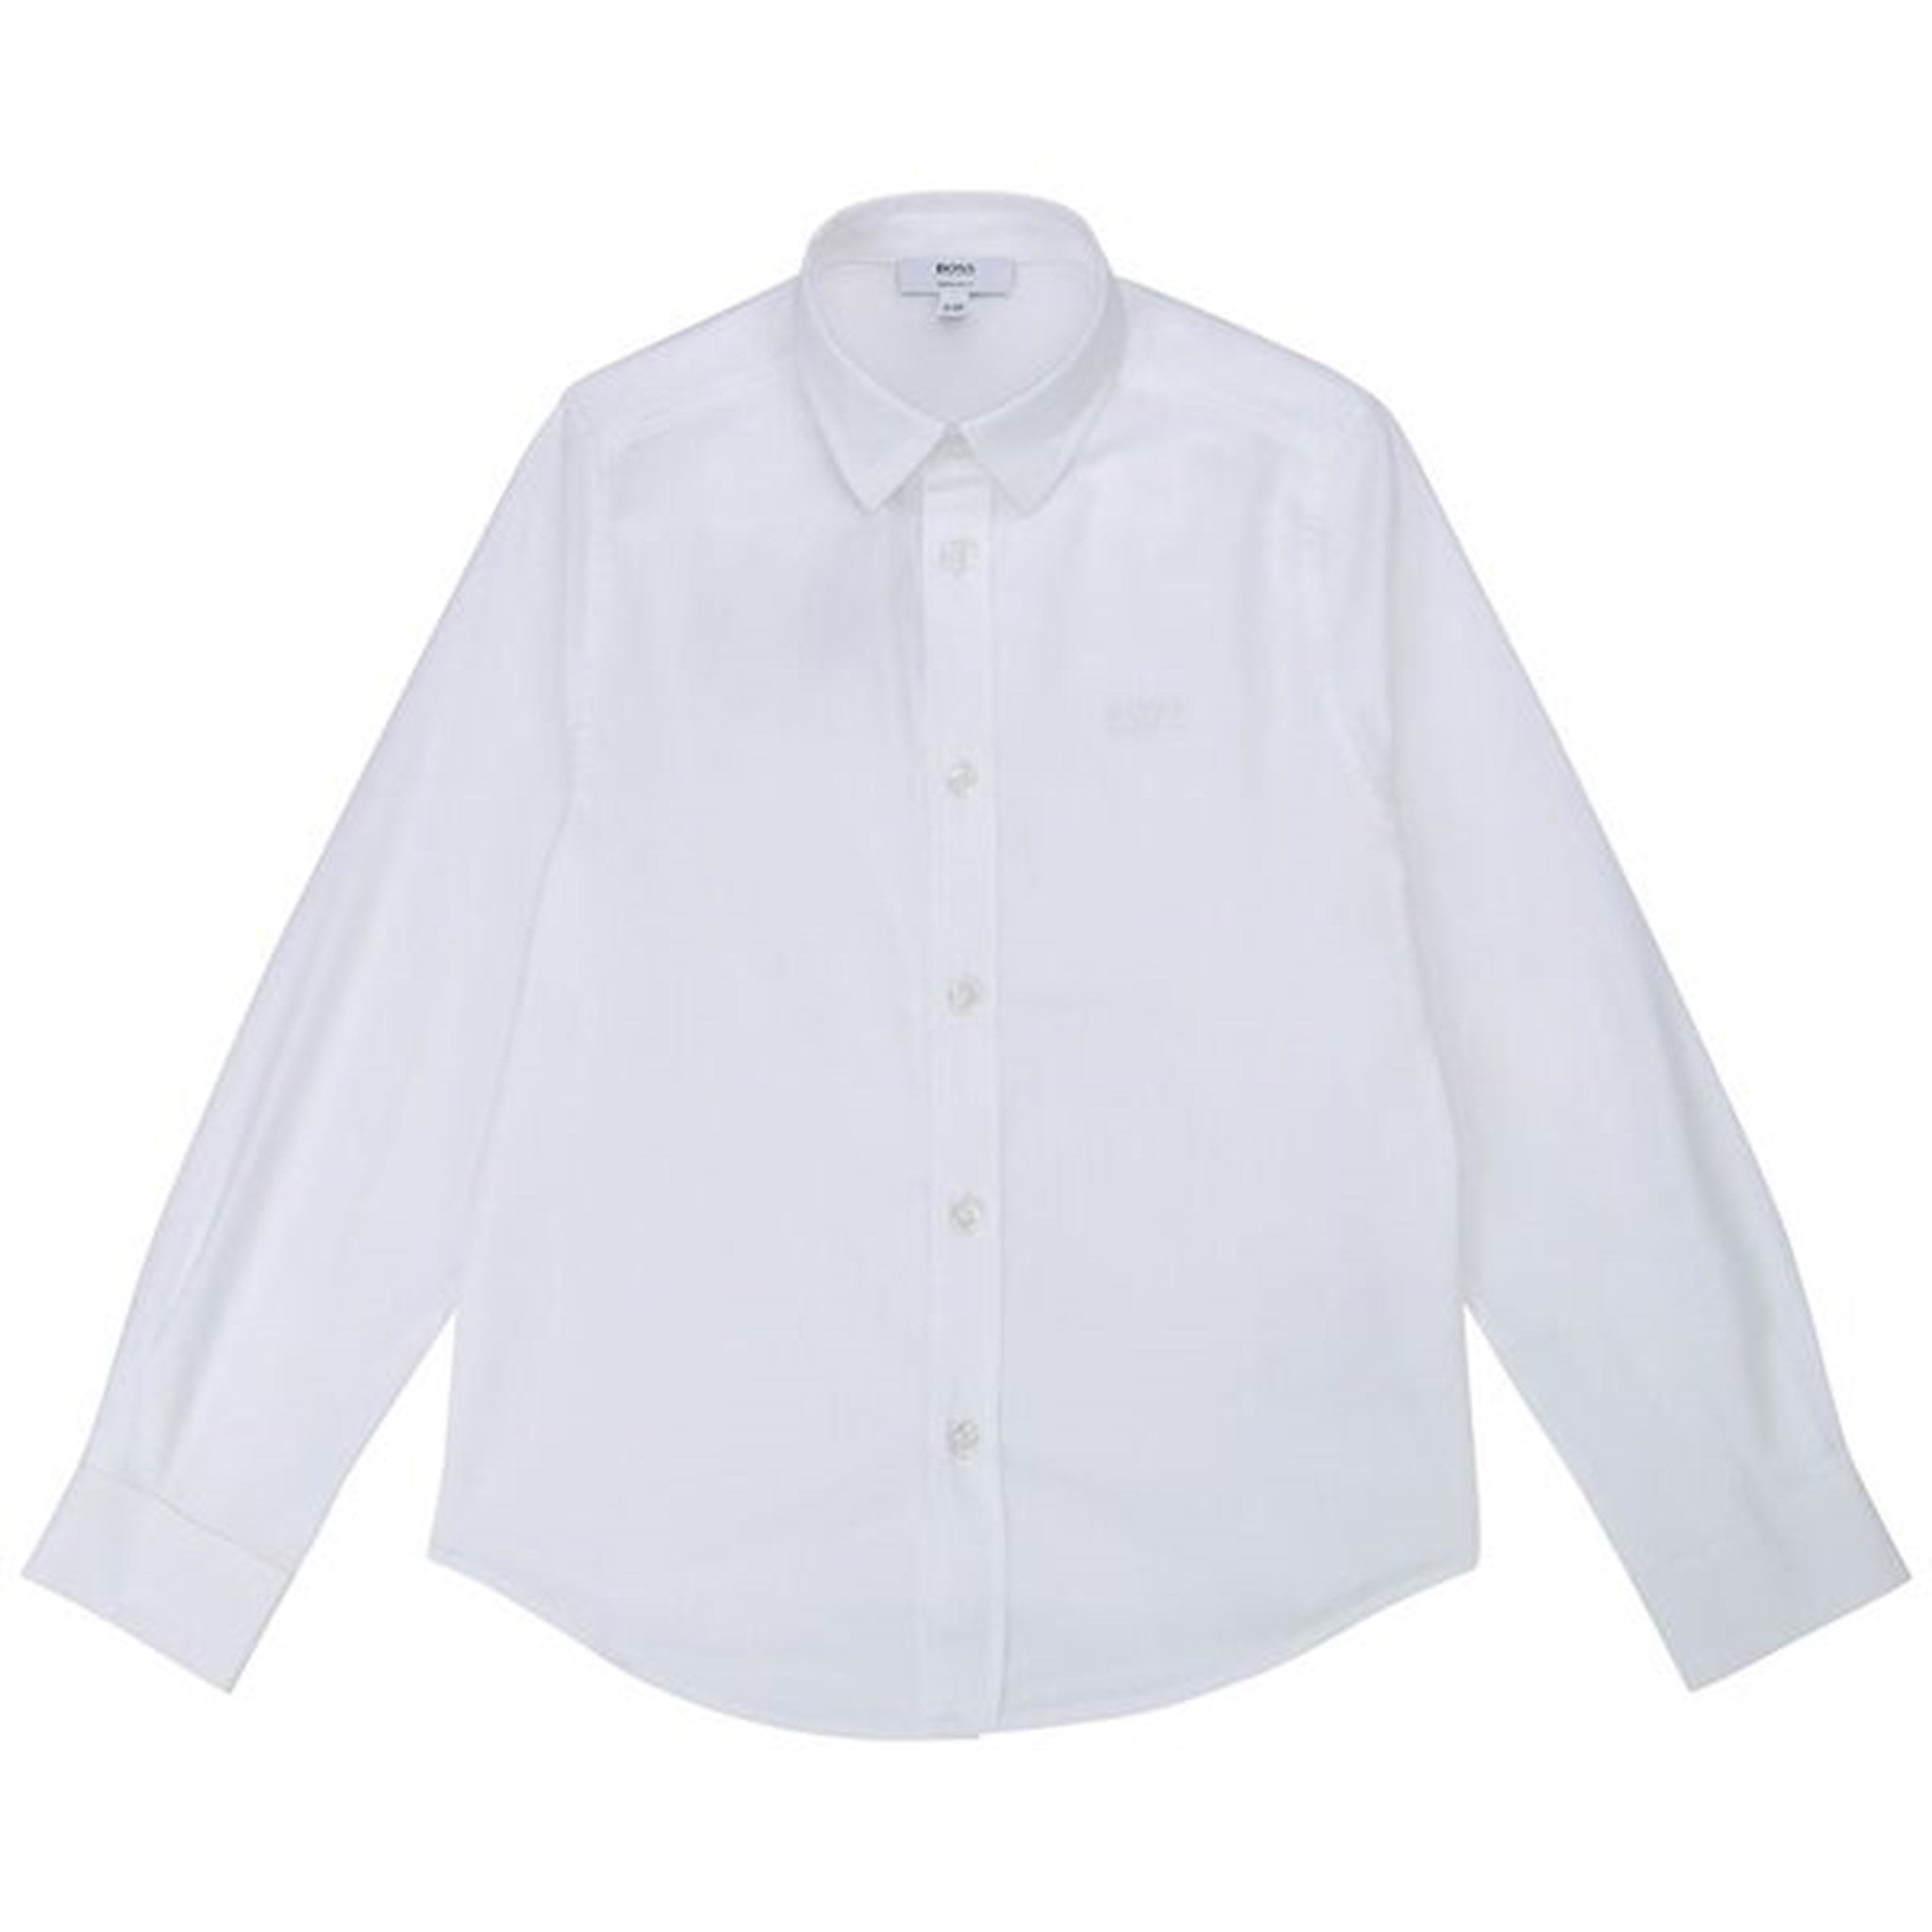 Hugo Boss Boy Long Sleeved Shirt White